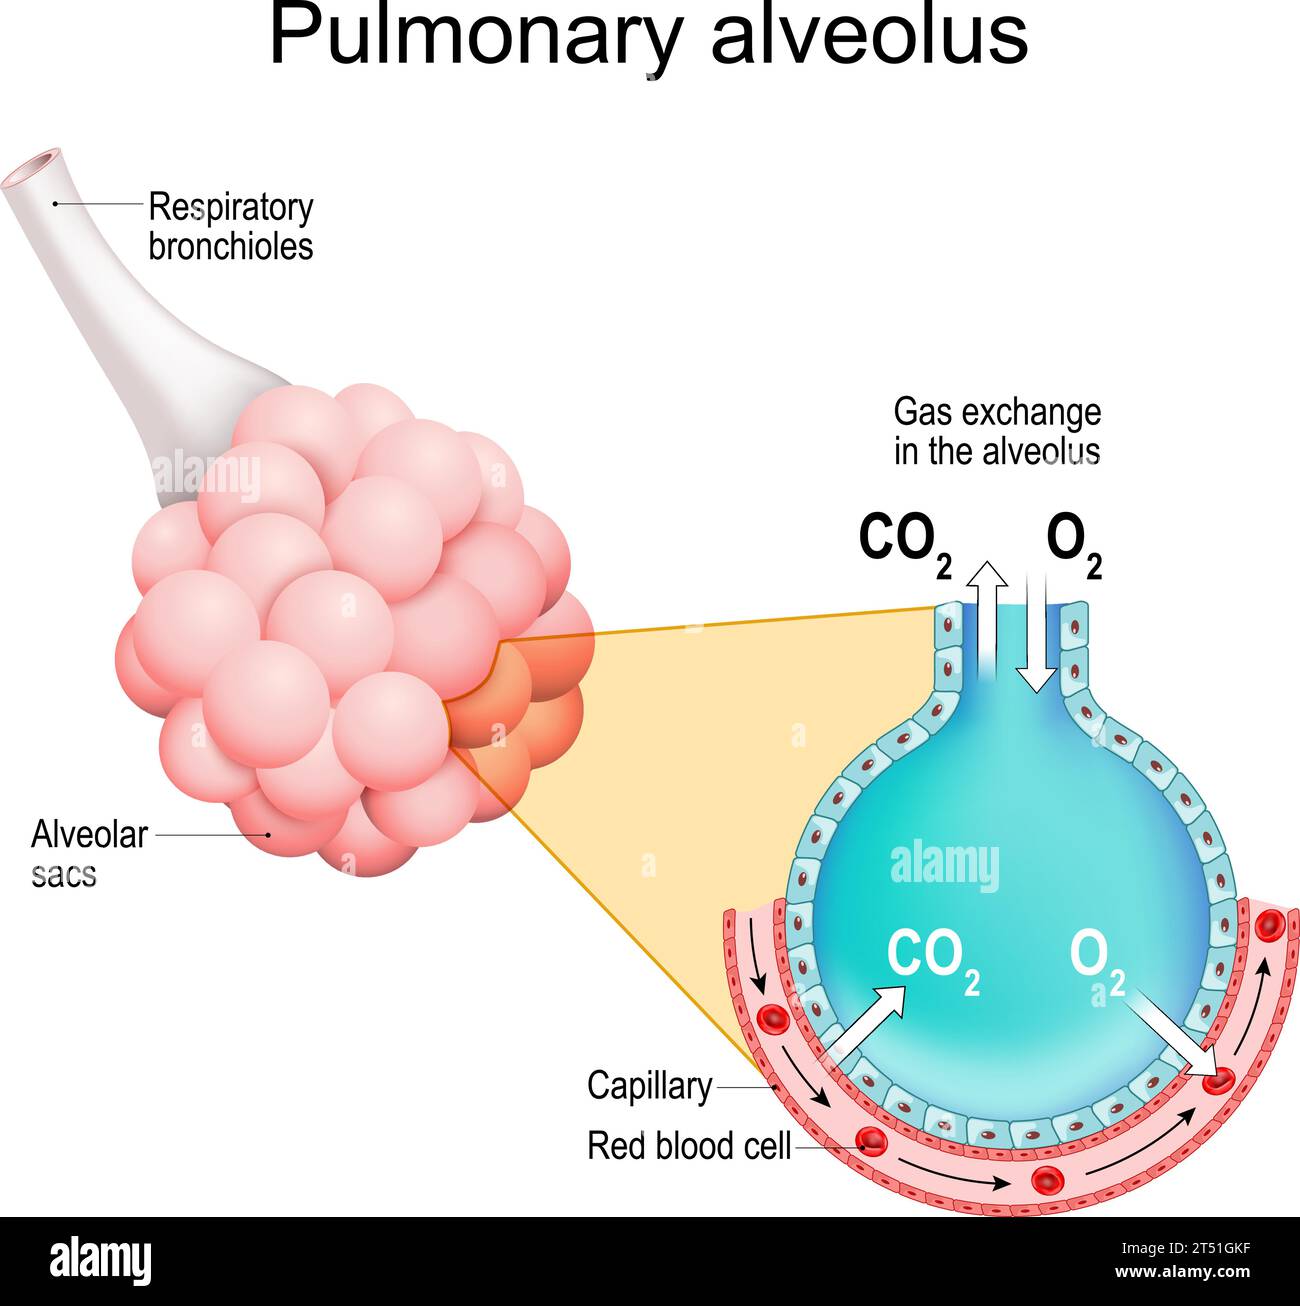 Alveoli polmonari. scambio di gas nei polmoni. Bronchioli respiratori con sacchi alveolari. Sezione trasversale dell'alveolo e del capillare. Siste respiratorio Illustrazione Vettoriale